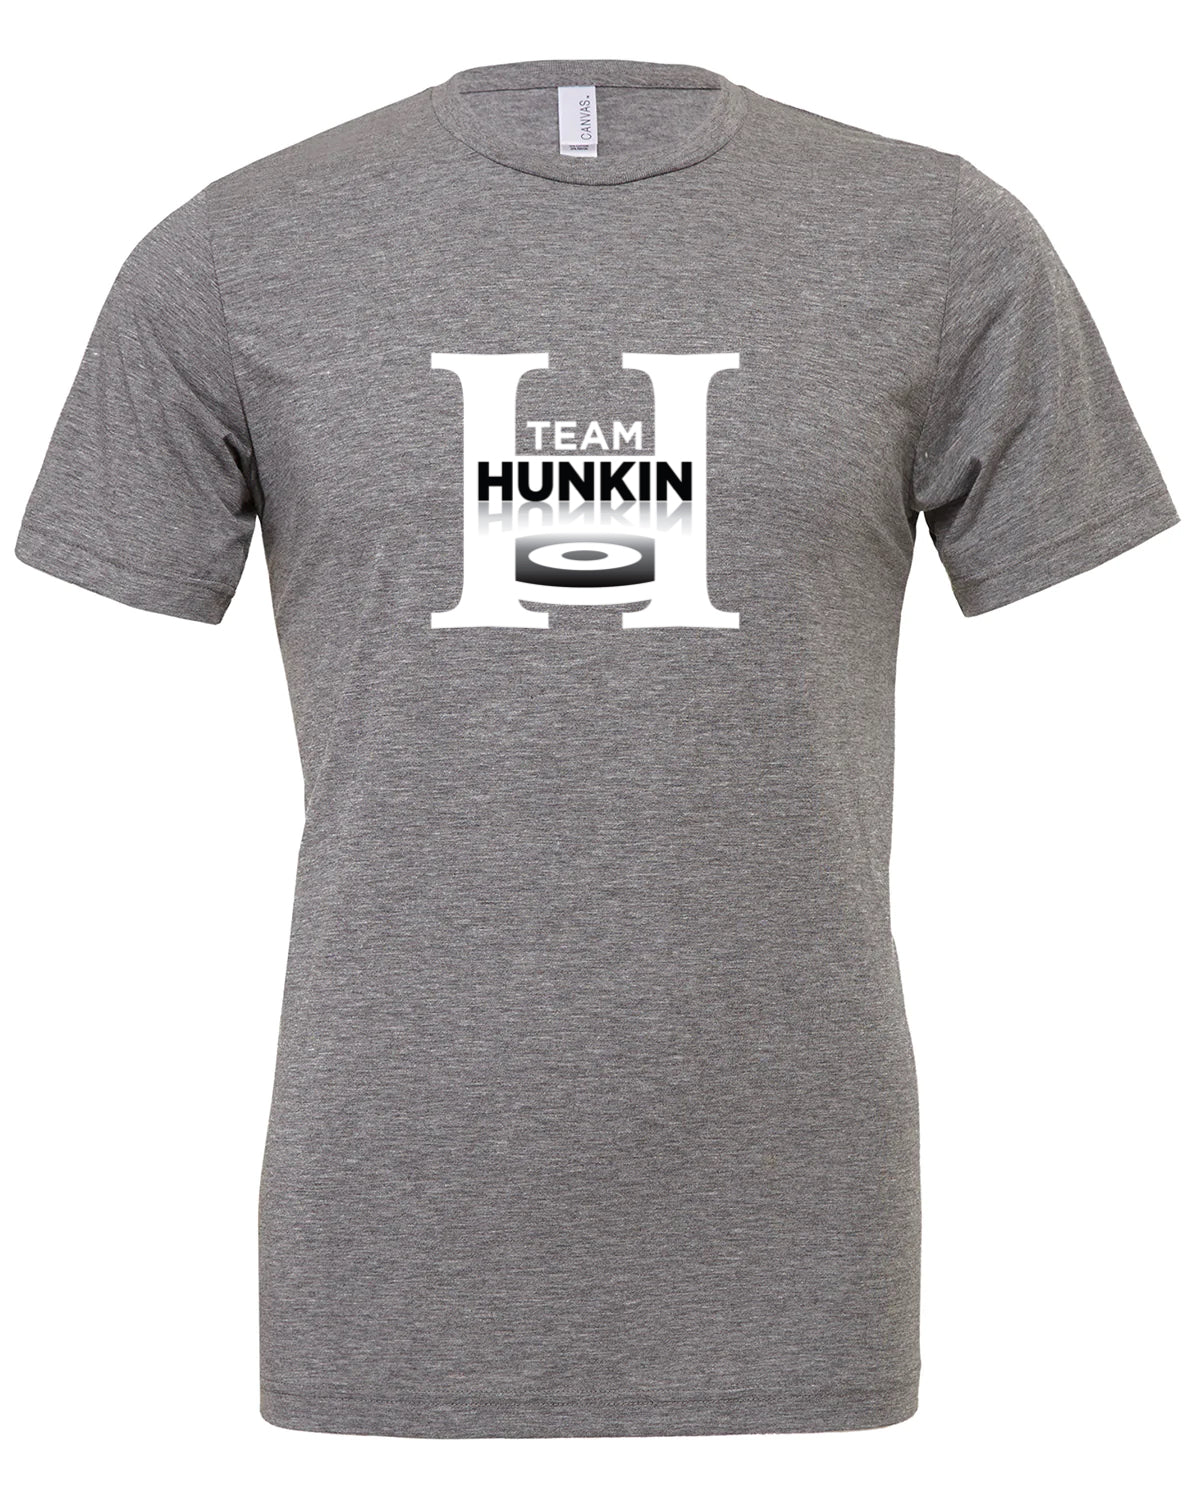 Team Hunkin Tee ( Unisex Fit)